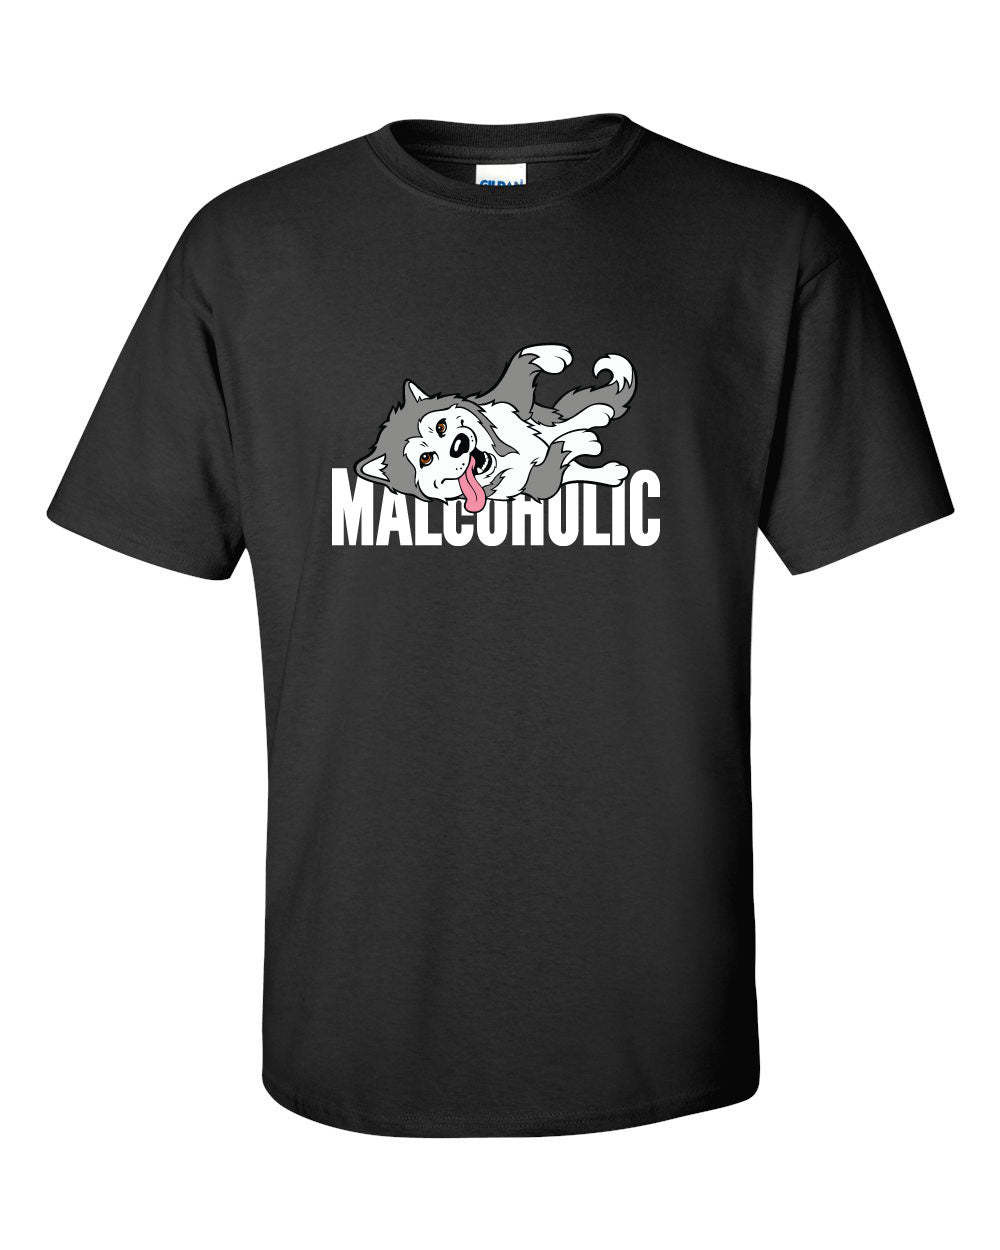 Malcoholic - Alaskan Malamute T-Shirt